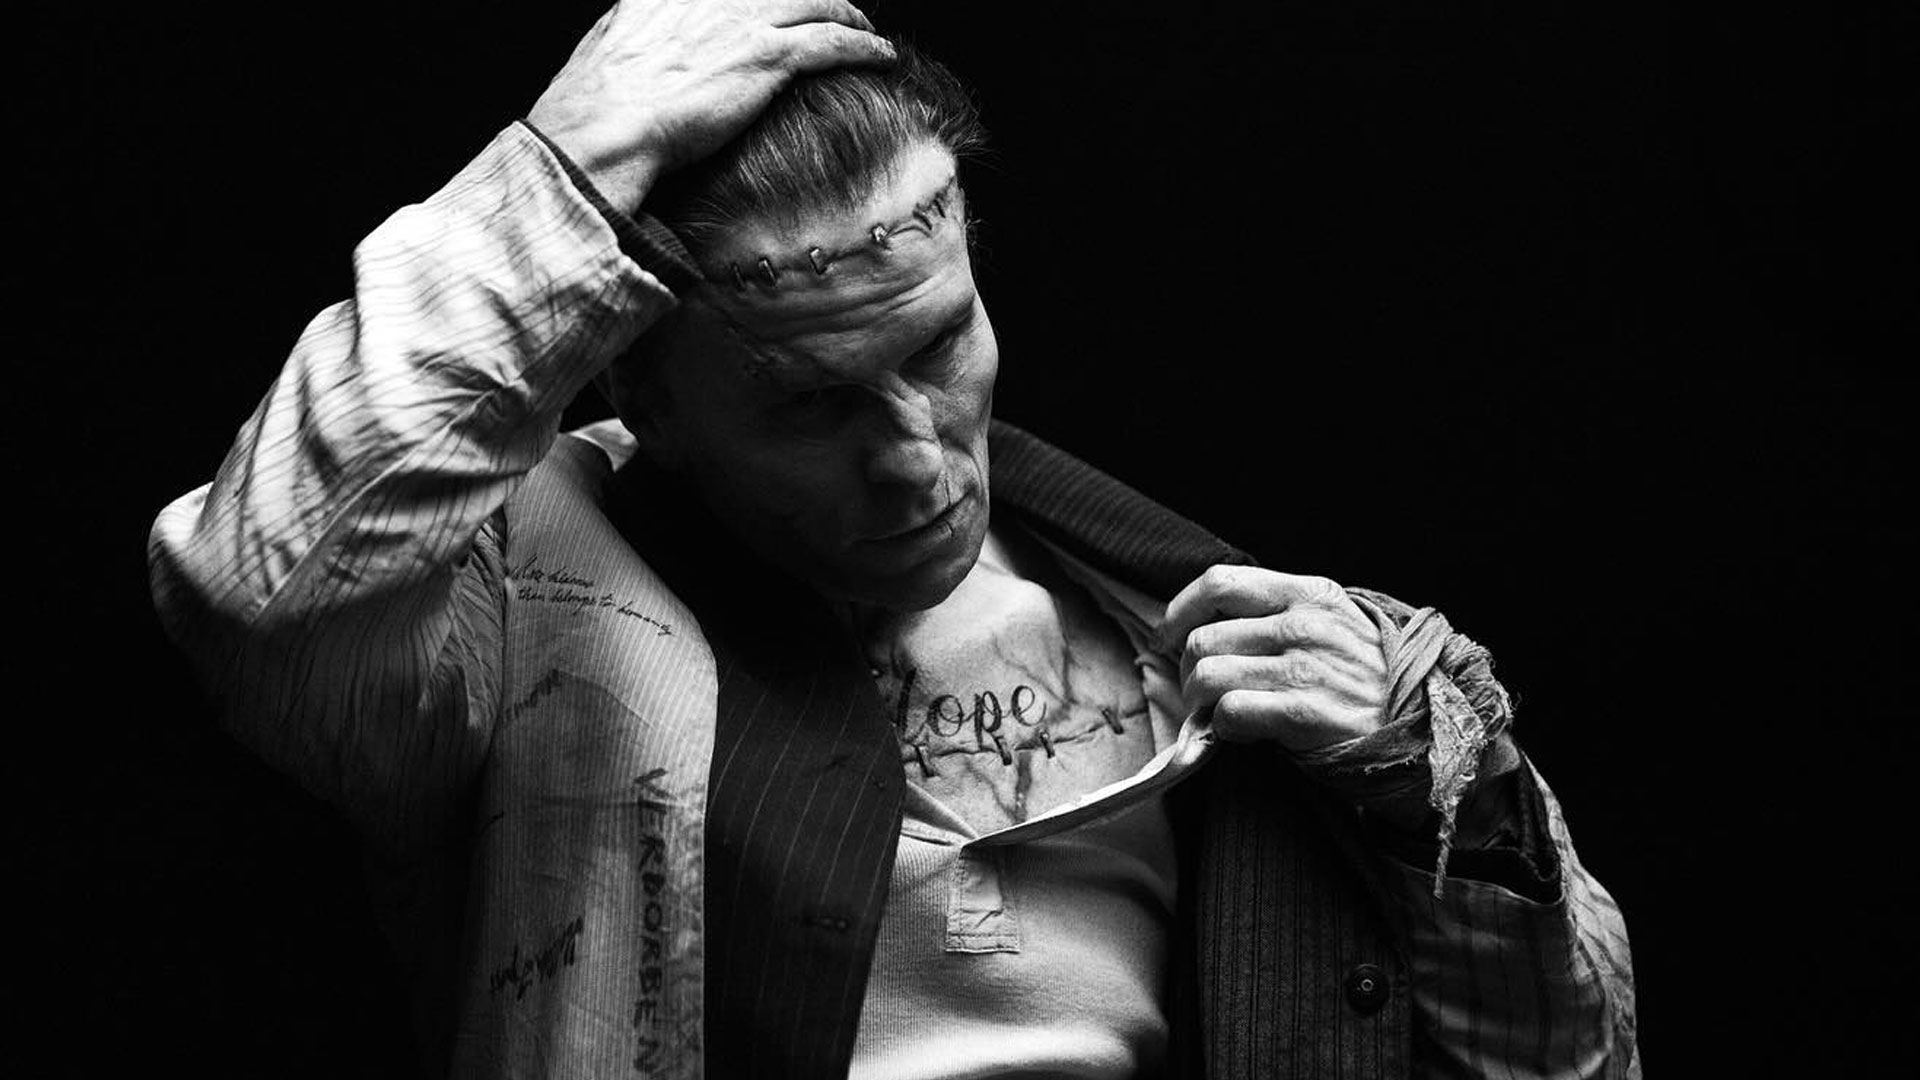 Imagen publicada en Instagram de Christian Bale vestido de Frankenstein